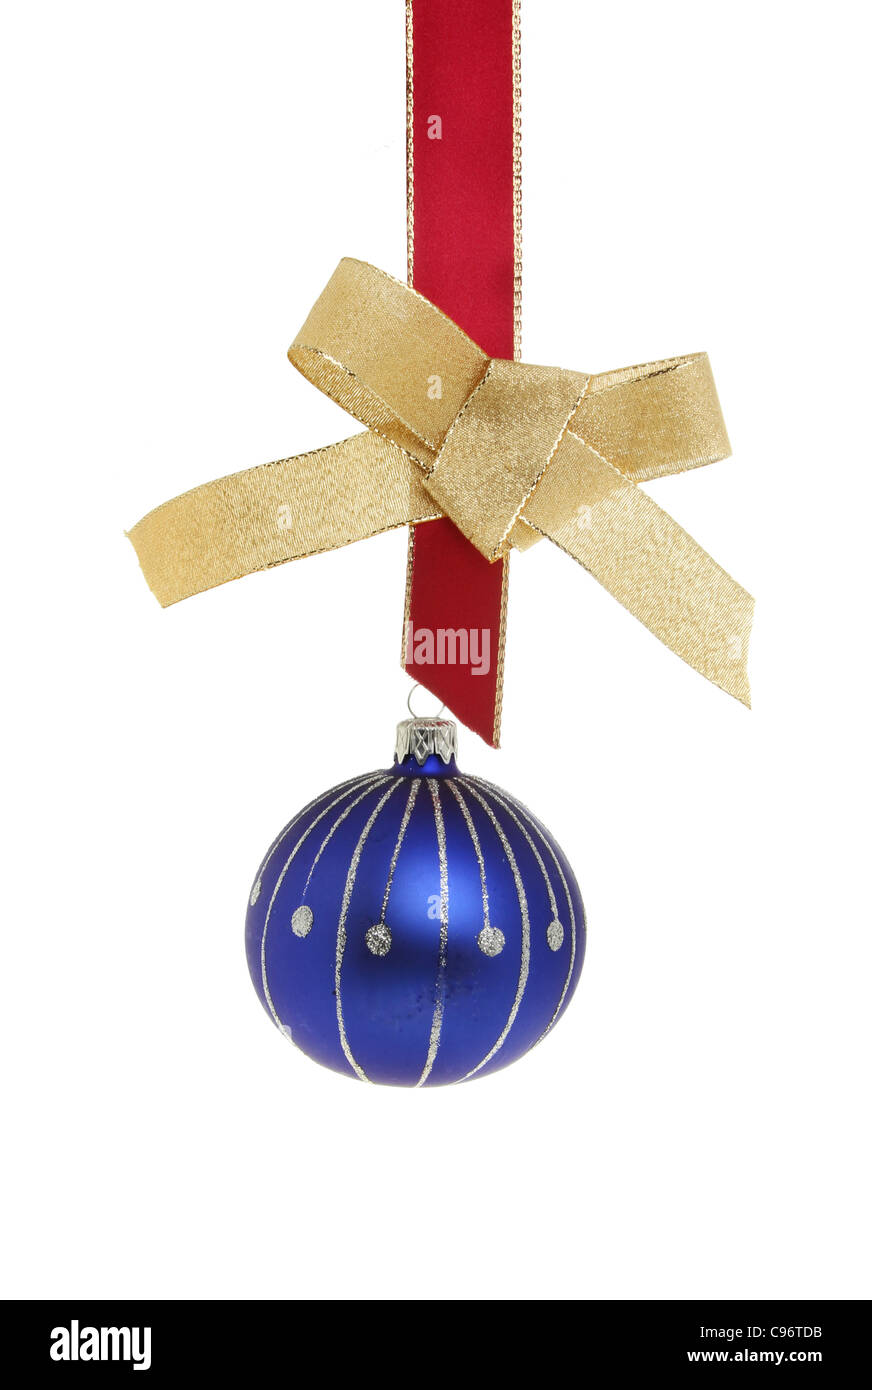 Azul y plata de adornos de Navidad que cuelgan de una cinta roja con un arco de oro contra un blanco aislado Foto de stock